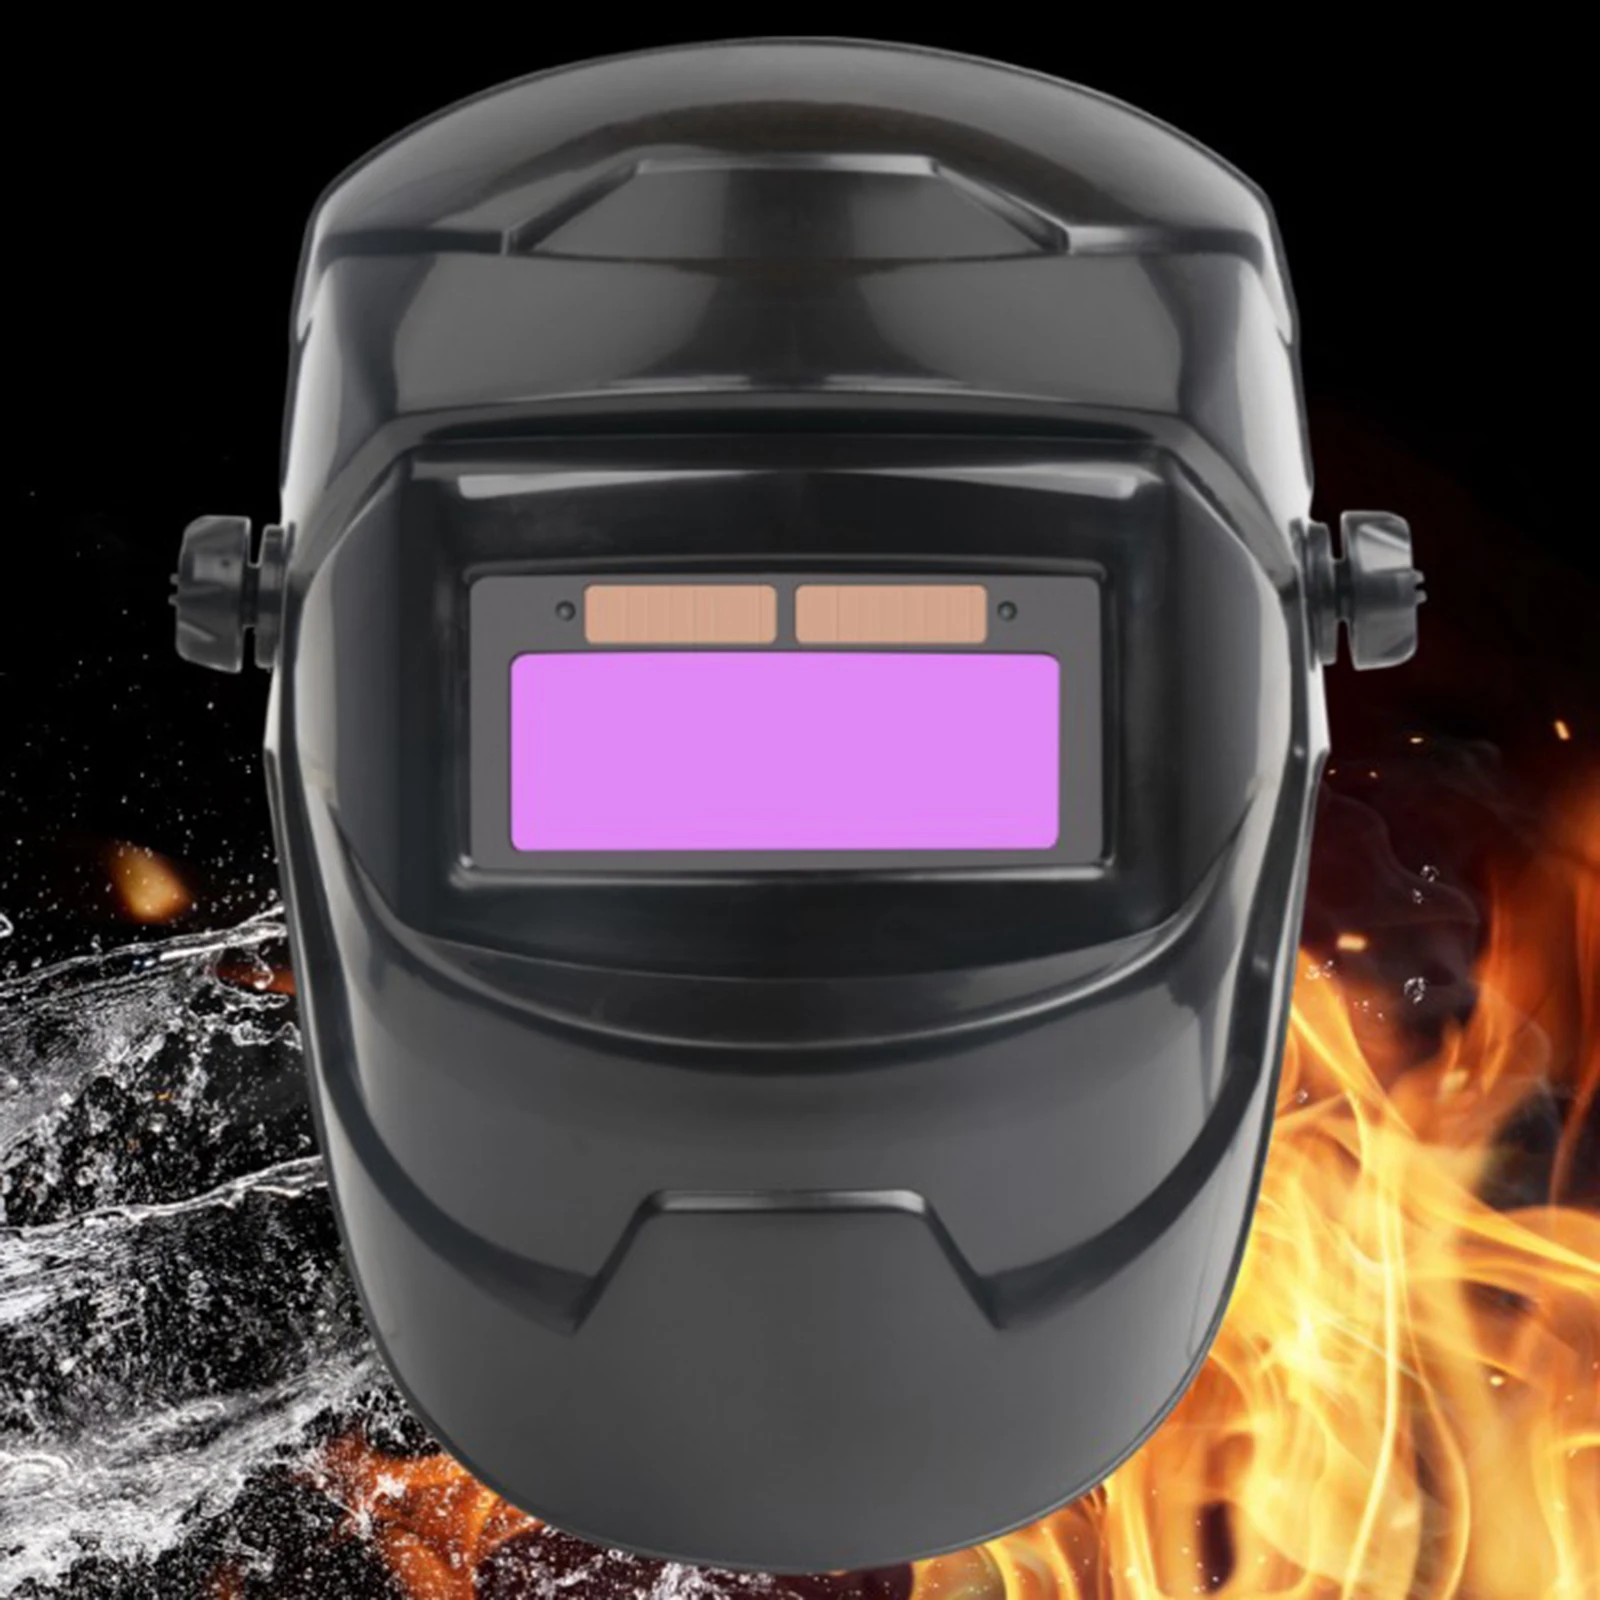 Máscara de soldadura automática casco ajustable modelo frontal